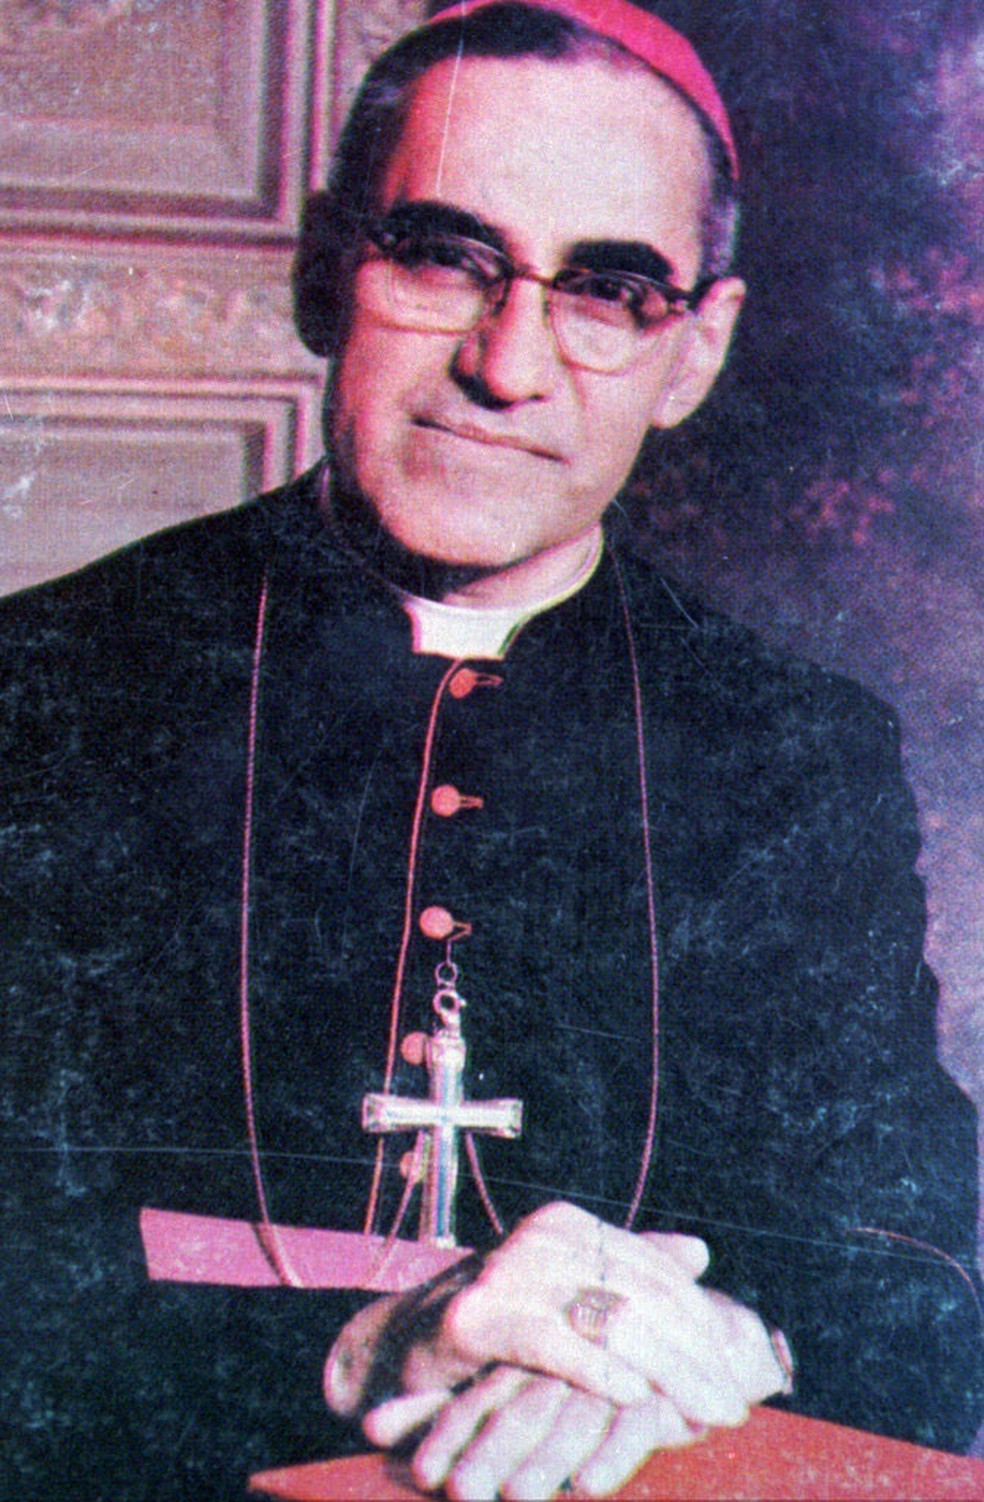 arcebispo salvadorenho Óscar Romero, em imagem de arquivo  (Foto: Associated Press)